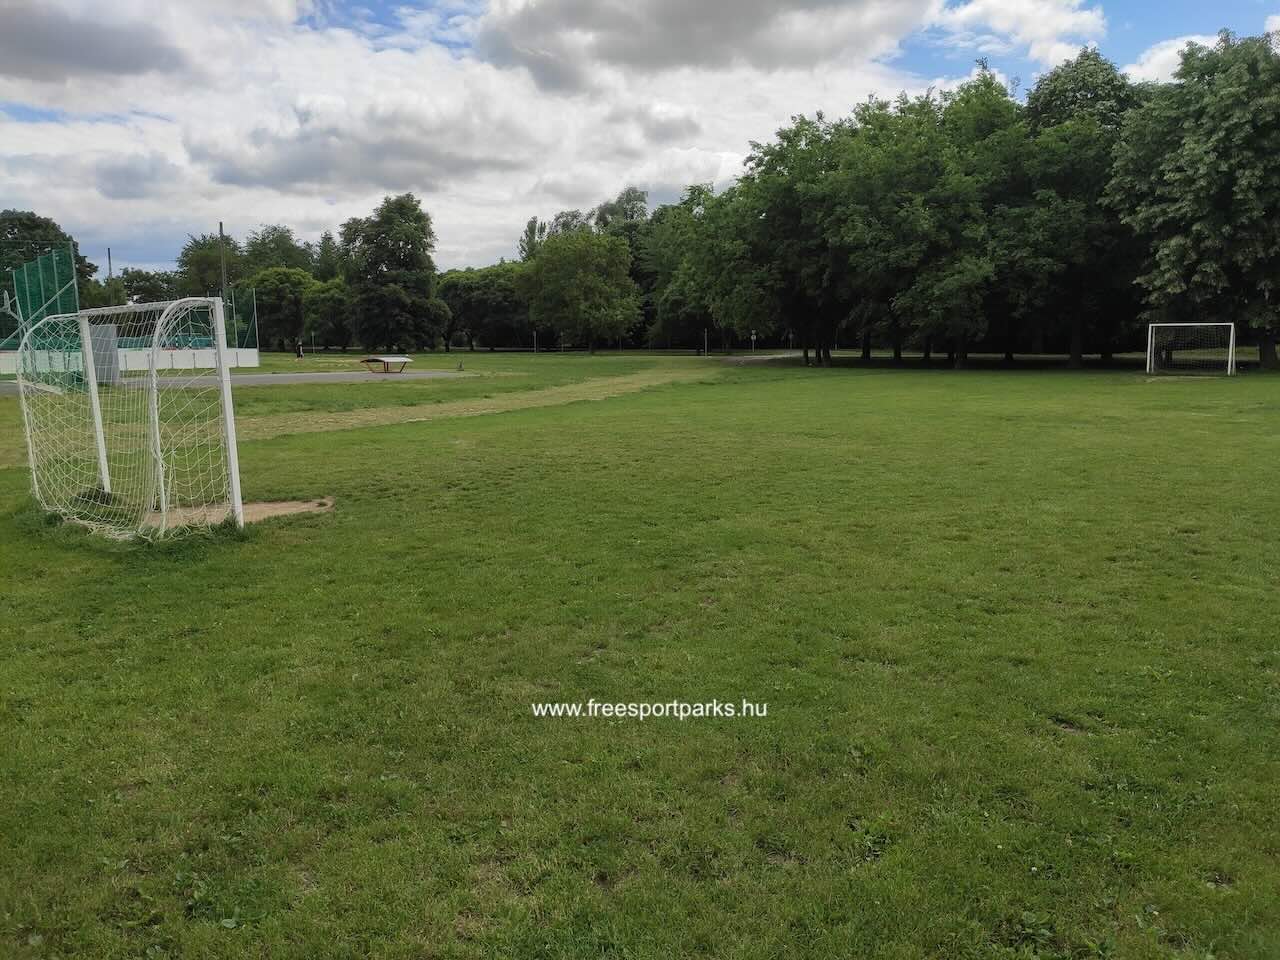 füves focipálya a réten, Sárvár Szabadidőpark - Free Sport Parks Blog